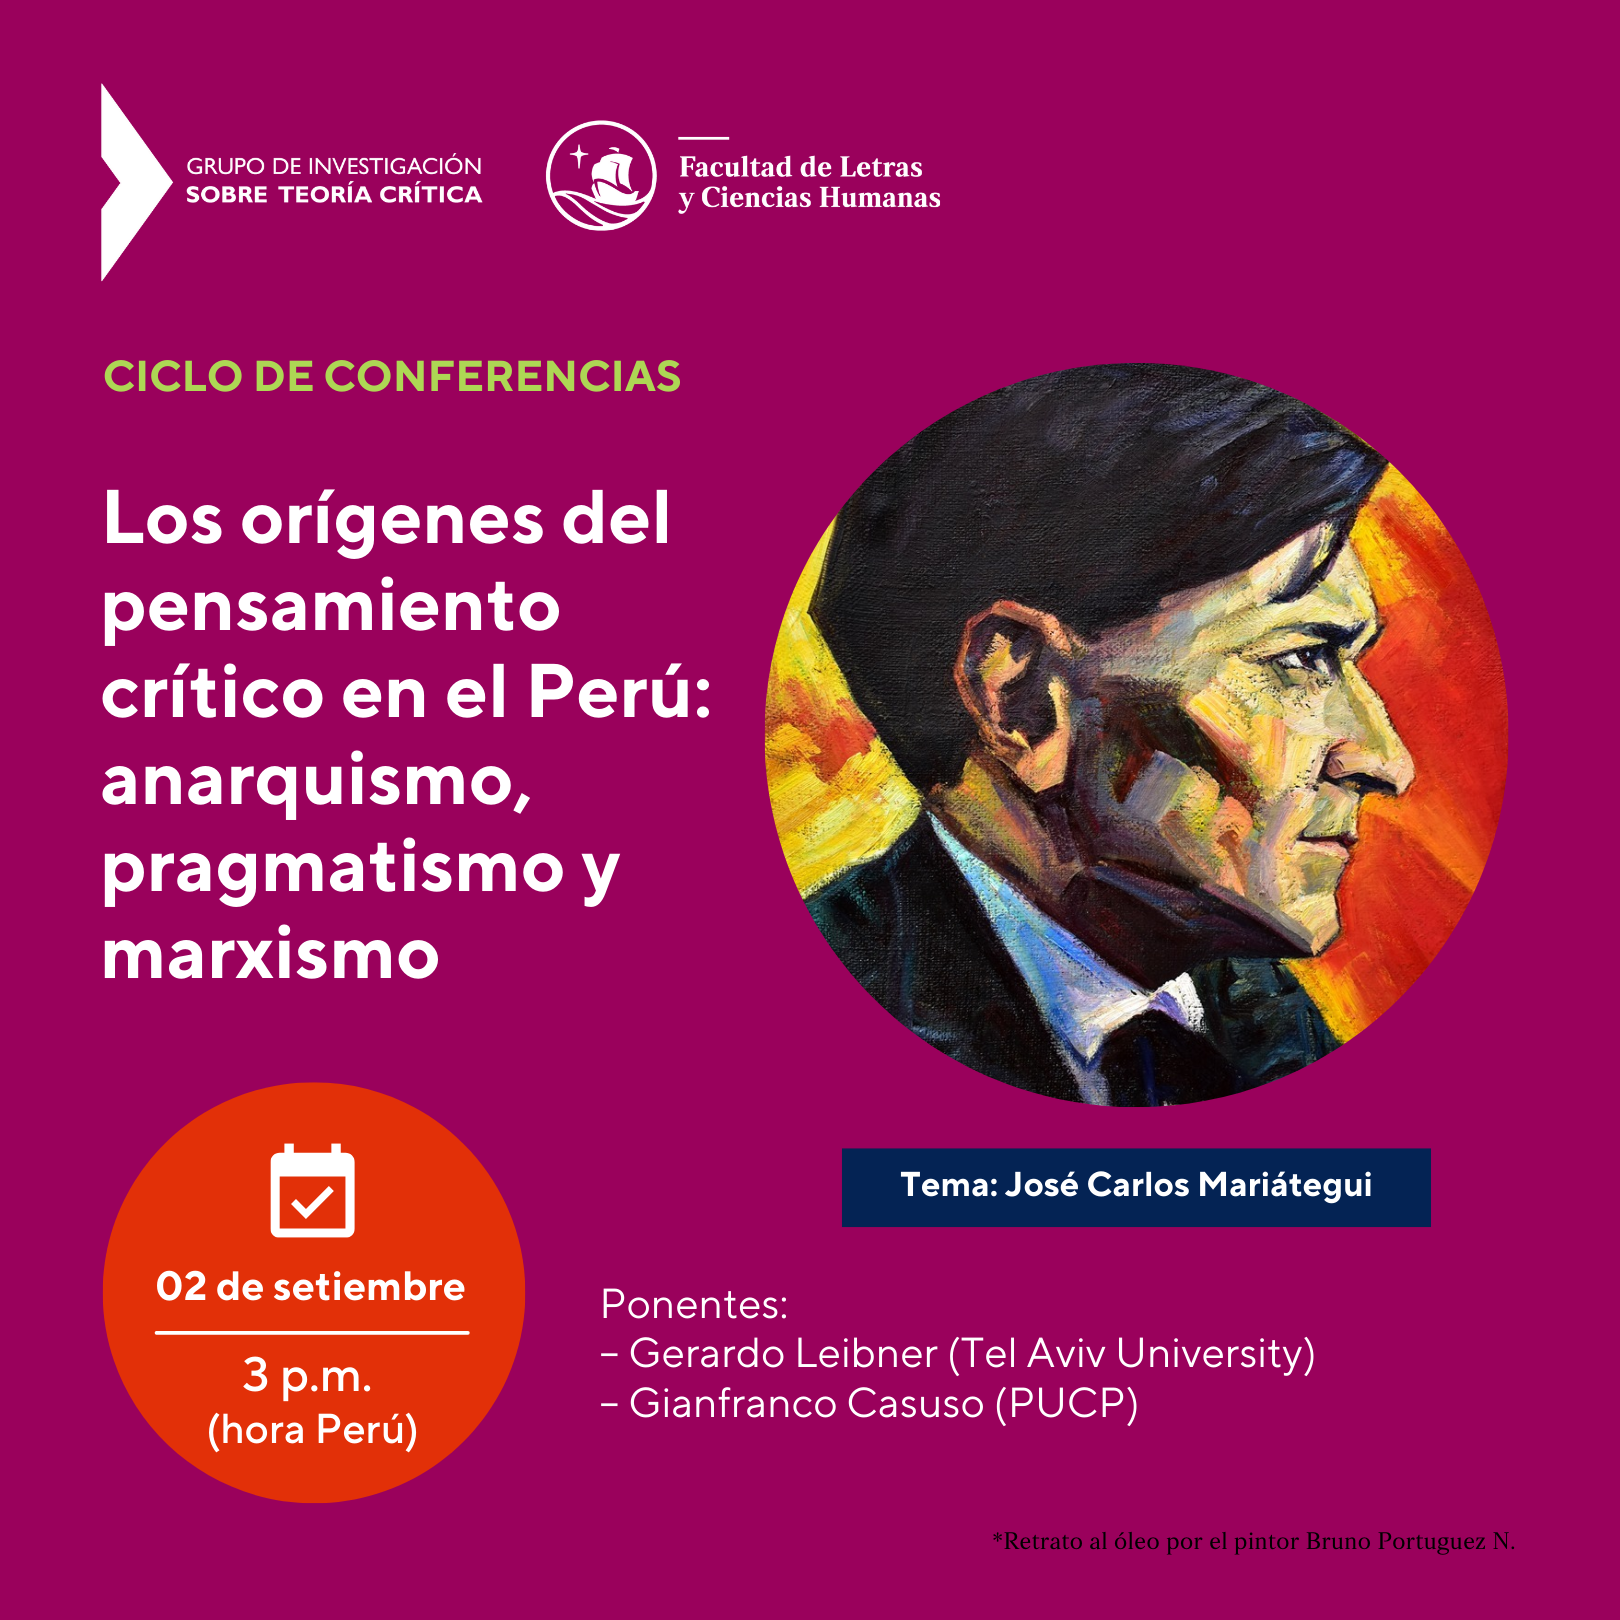 Ciclo de conferencias | Los orígenes del pensamiento crítico en el Perú: anarquismo, pragmatismo y marxismo